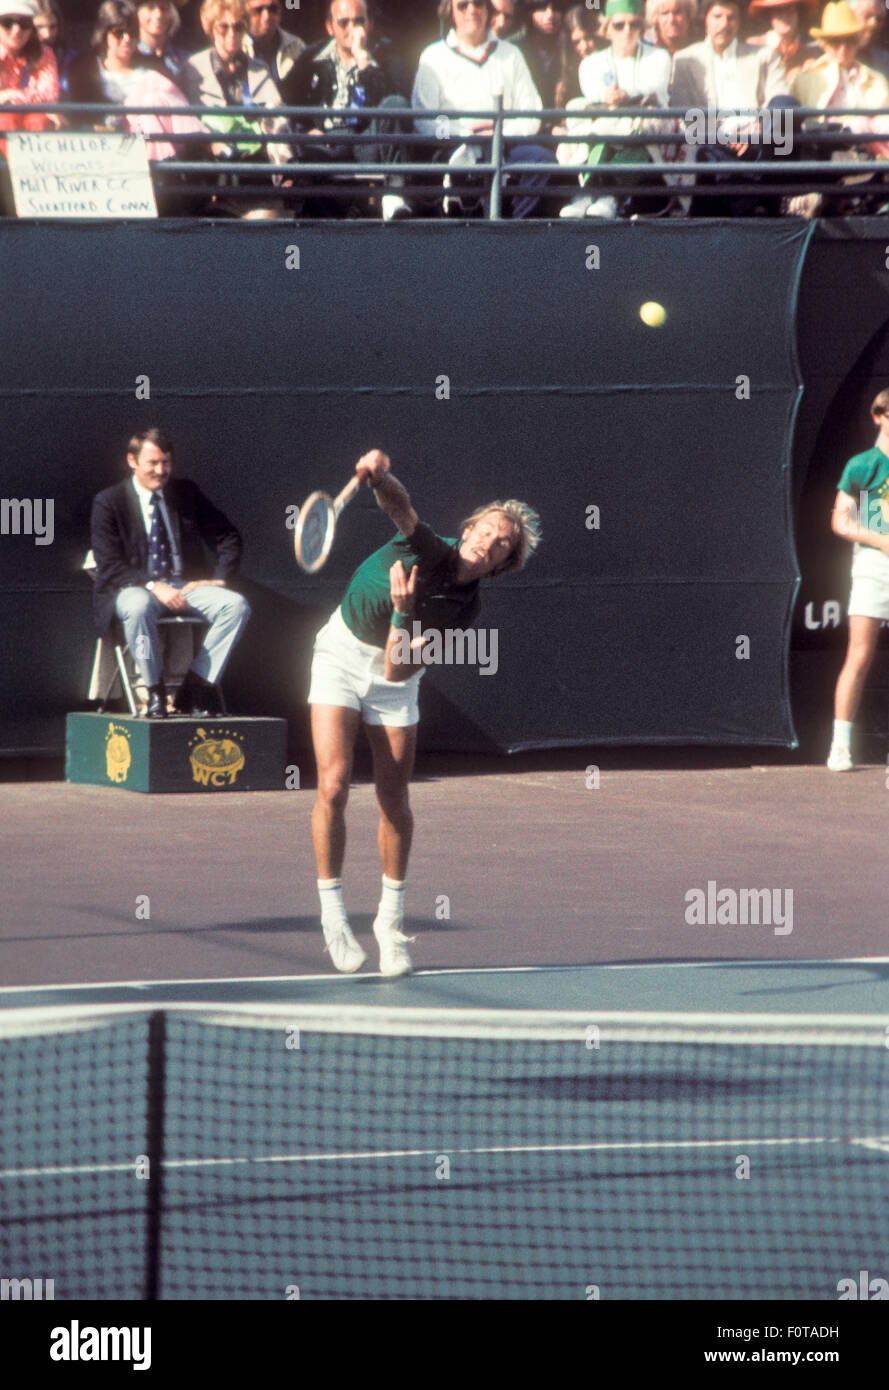 Stan Smith en action au tournoi de tennis à Carlsbad, Californie, en mars 1974. Banque D'Images